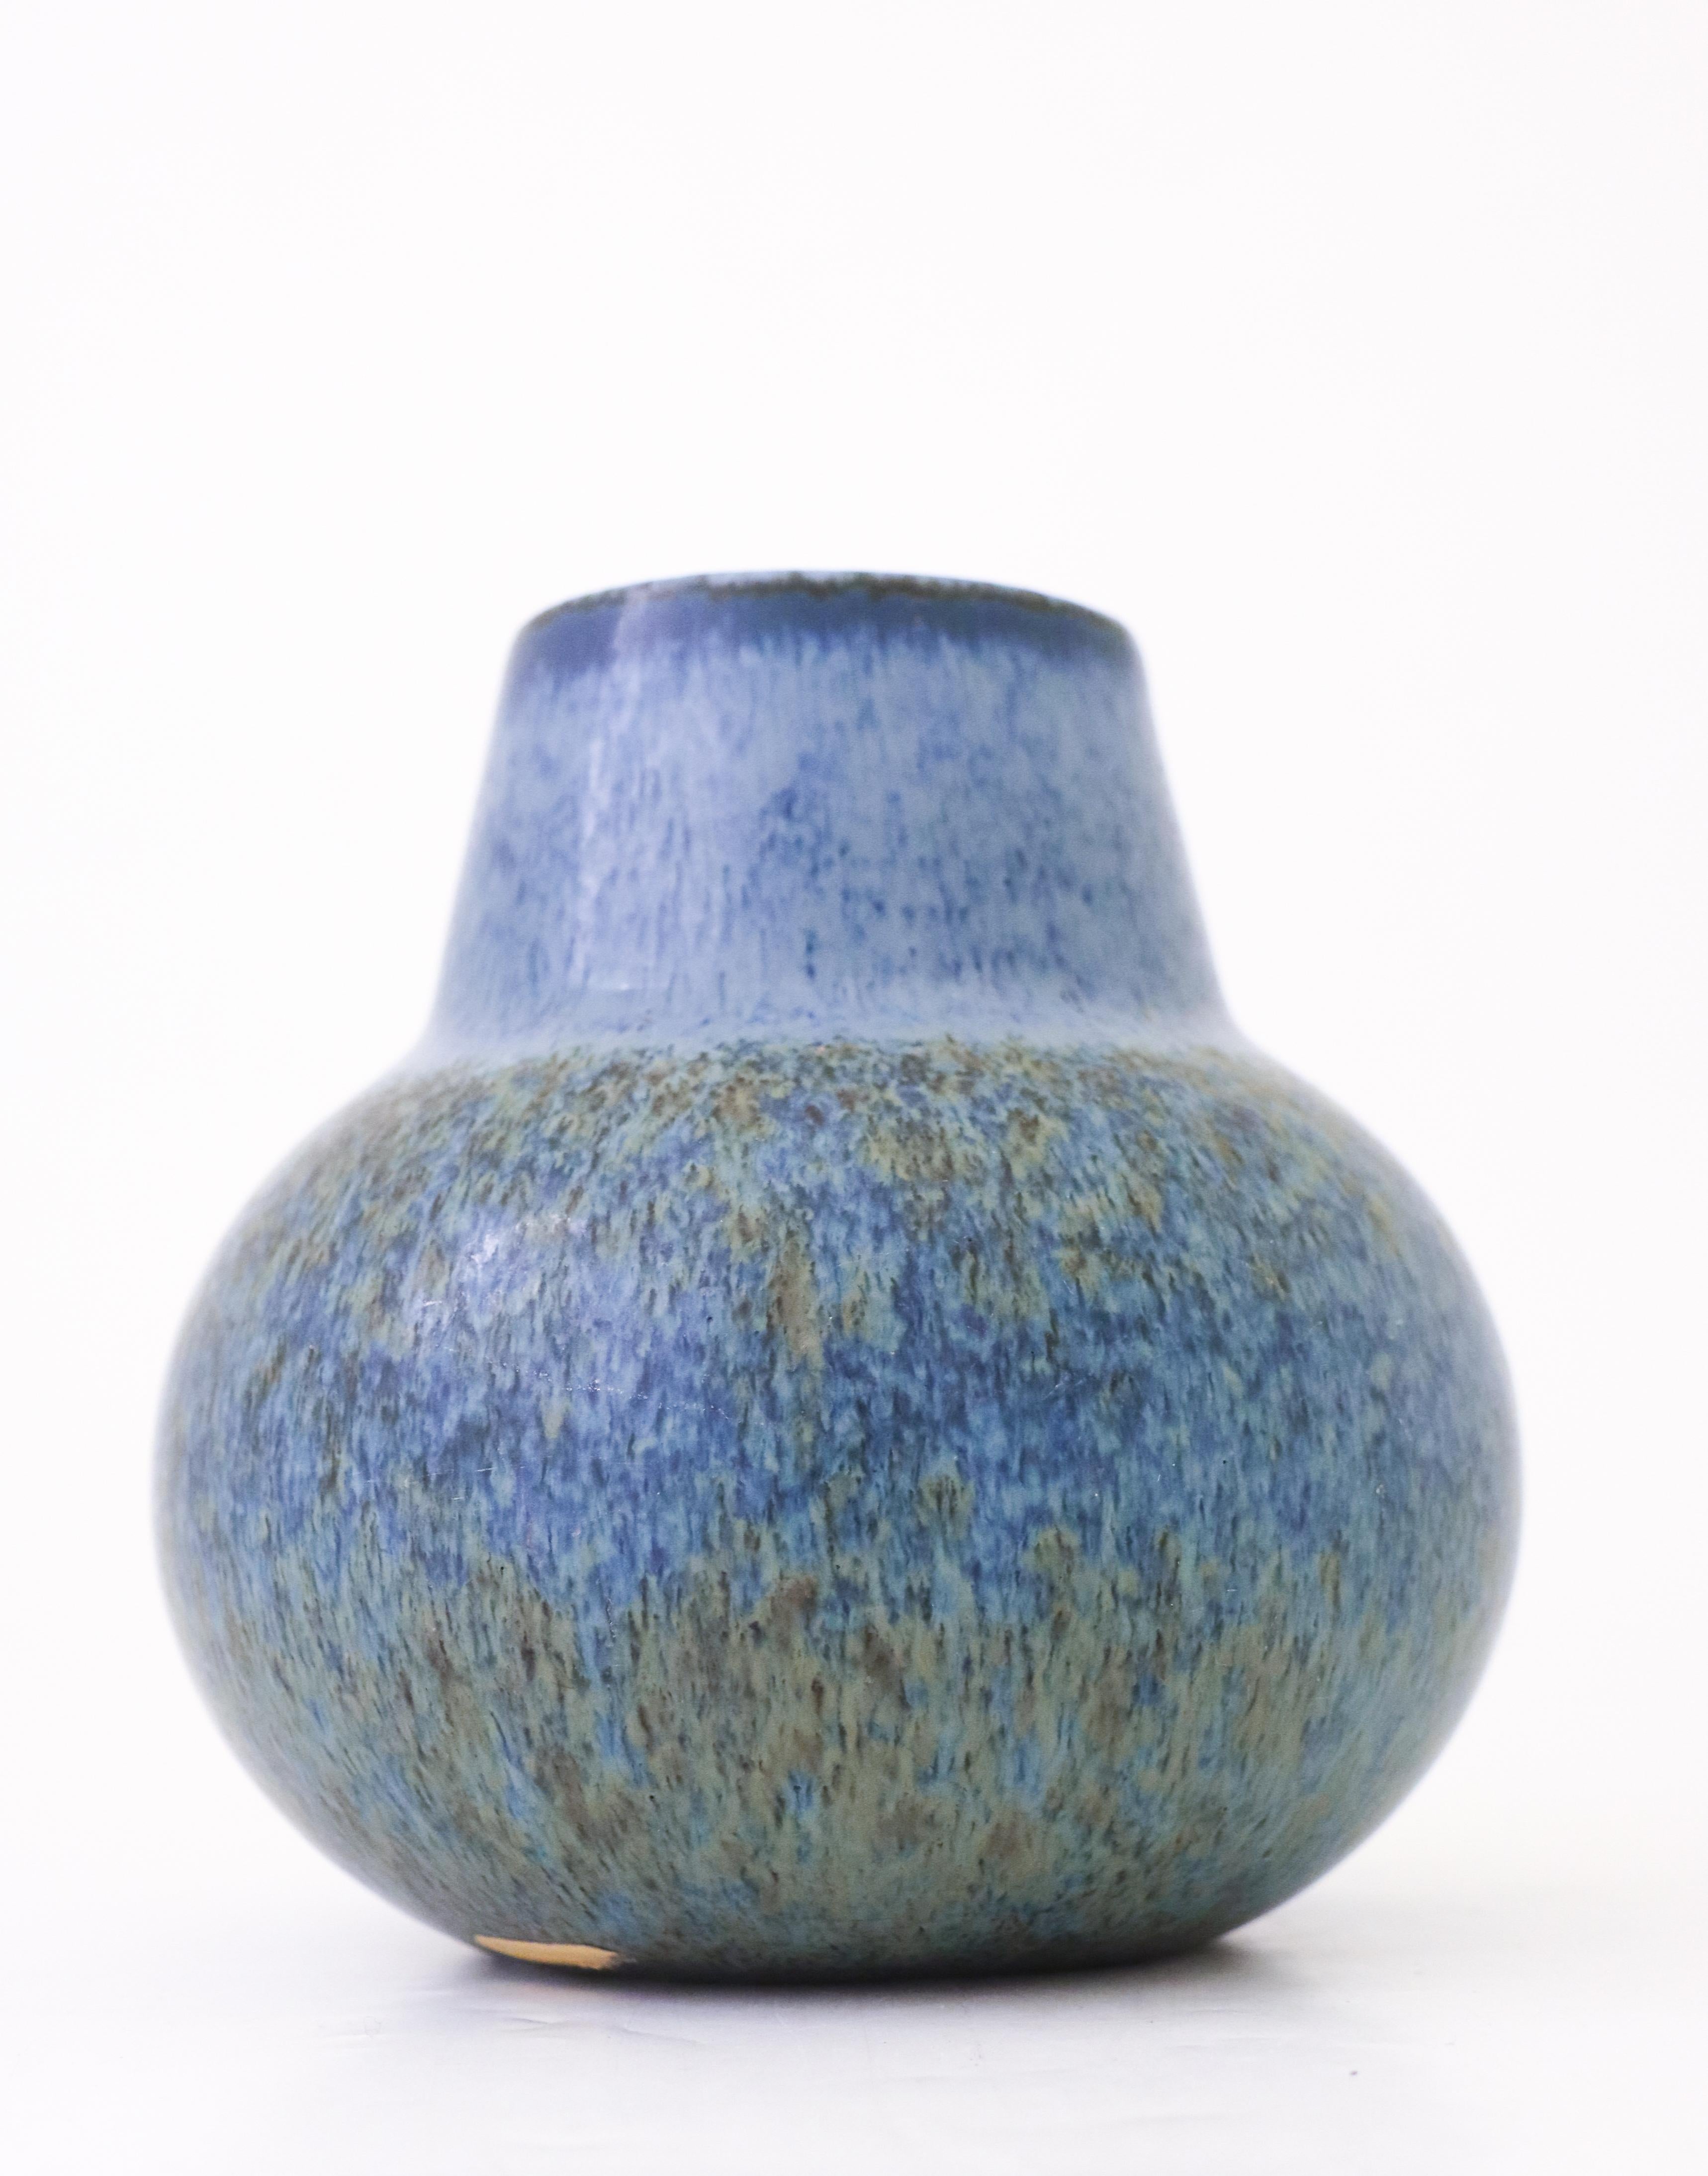 Un vase en céramique avec une belle glaçure, conçu par Carl-Harry Stålhane chez Rörstrand. Le vase mesure 15 cm de haut et 15 cm de diamètre. Il est en très bon état, à l'exception de quelques rayures mineures dans la glaçure. Le vase est marqué